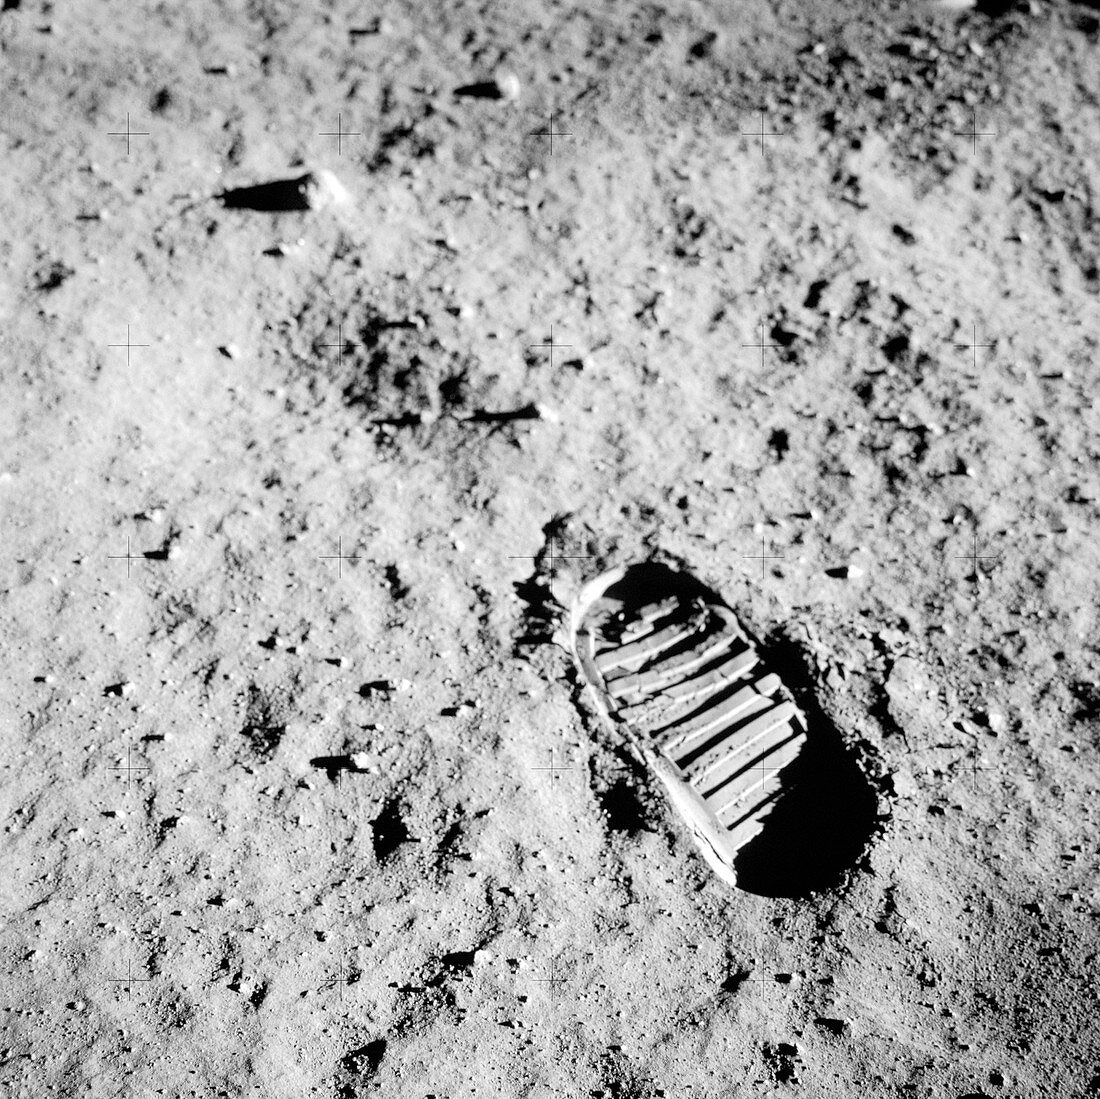 Apollo 11 bootprint on Moon,1969